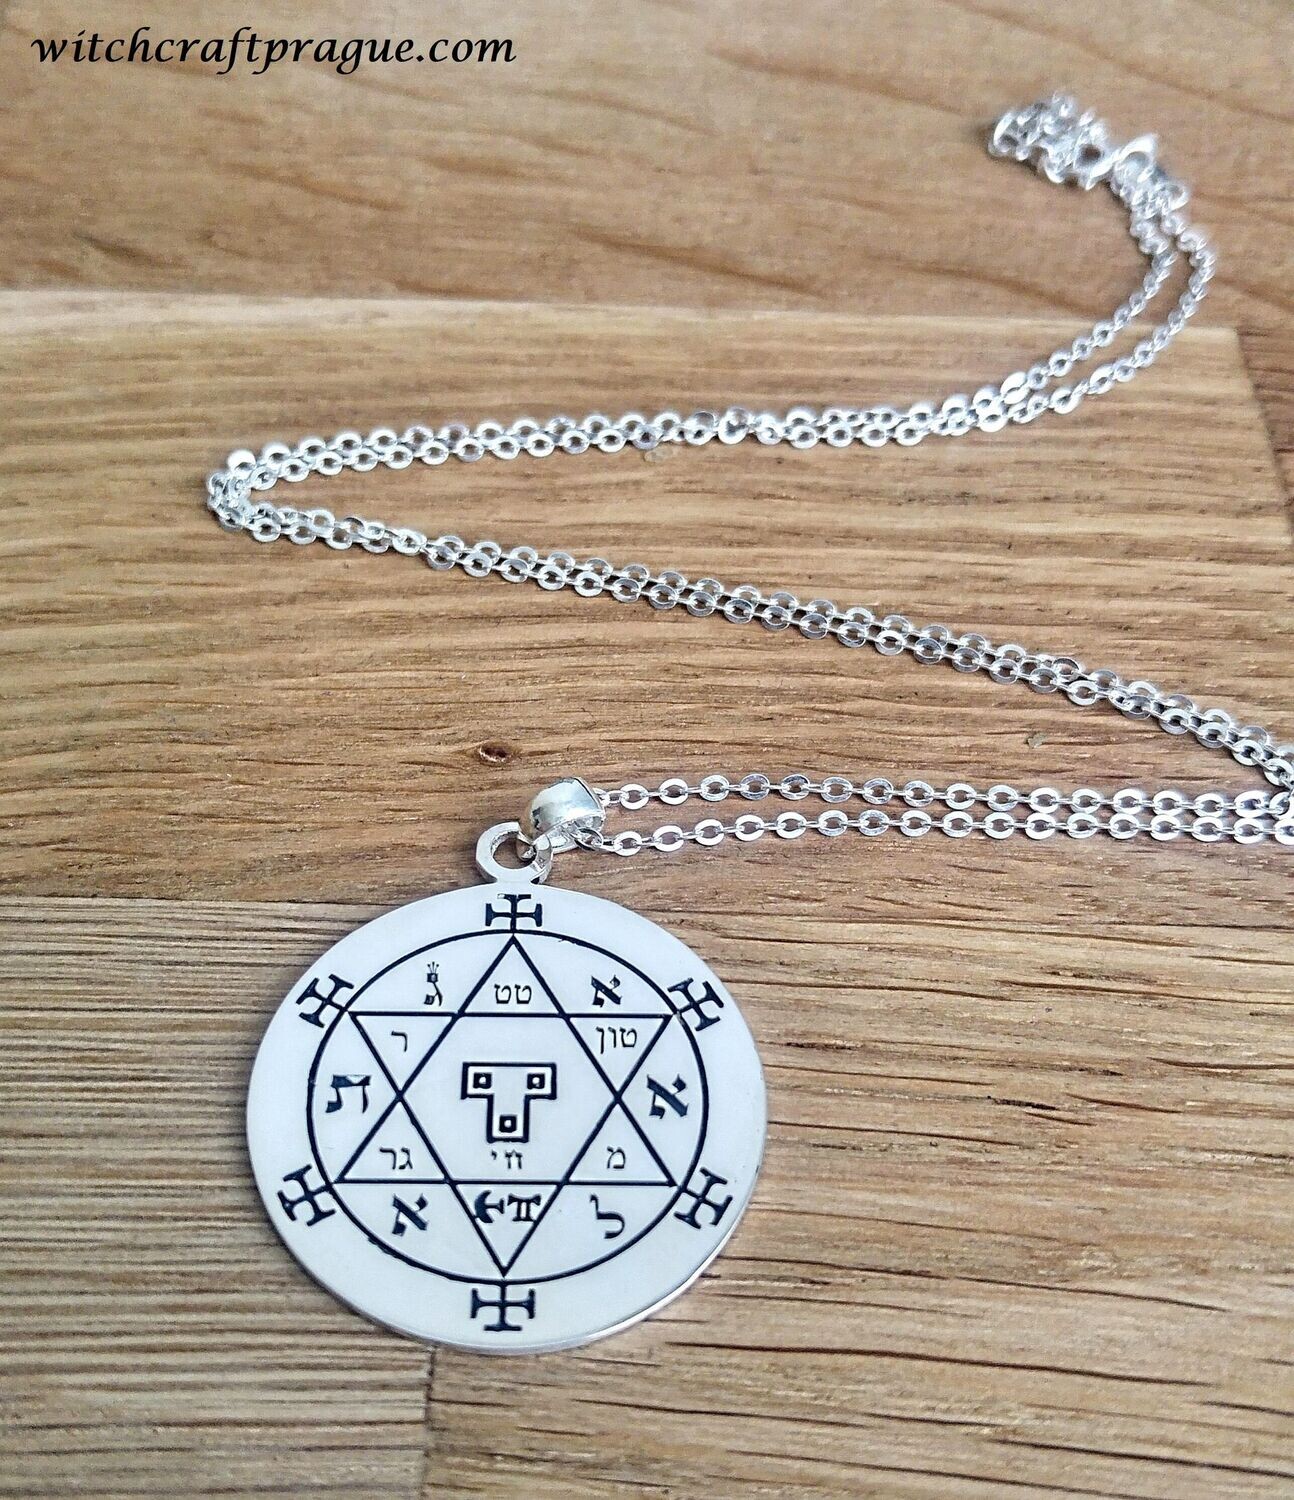 The Hexagram of Solomon Goetia necklace